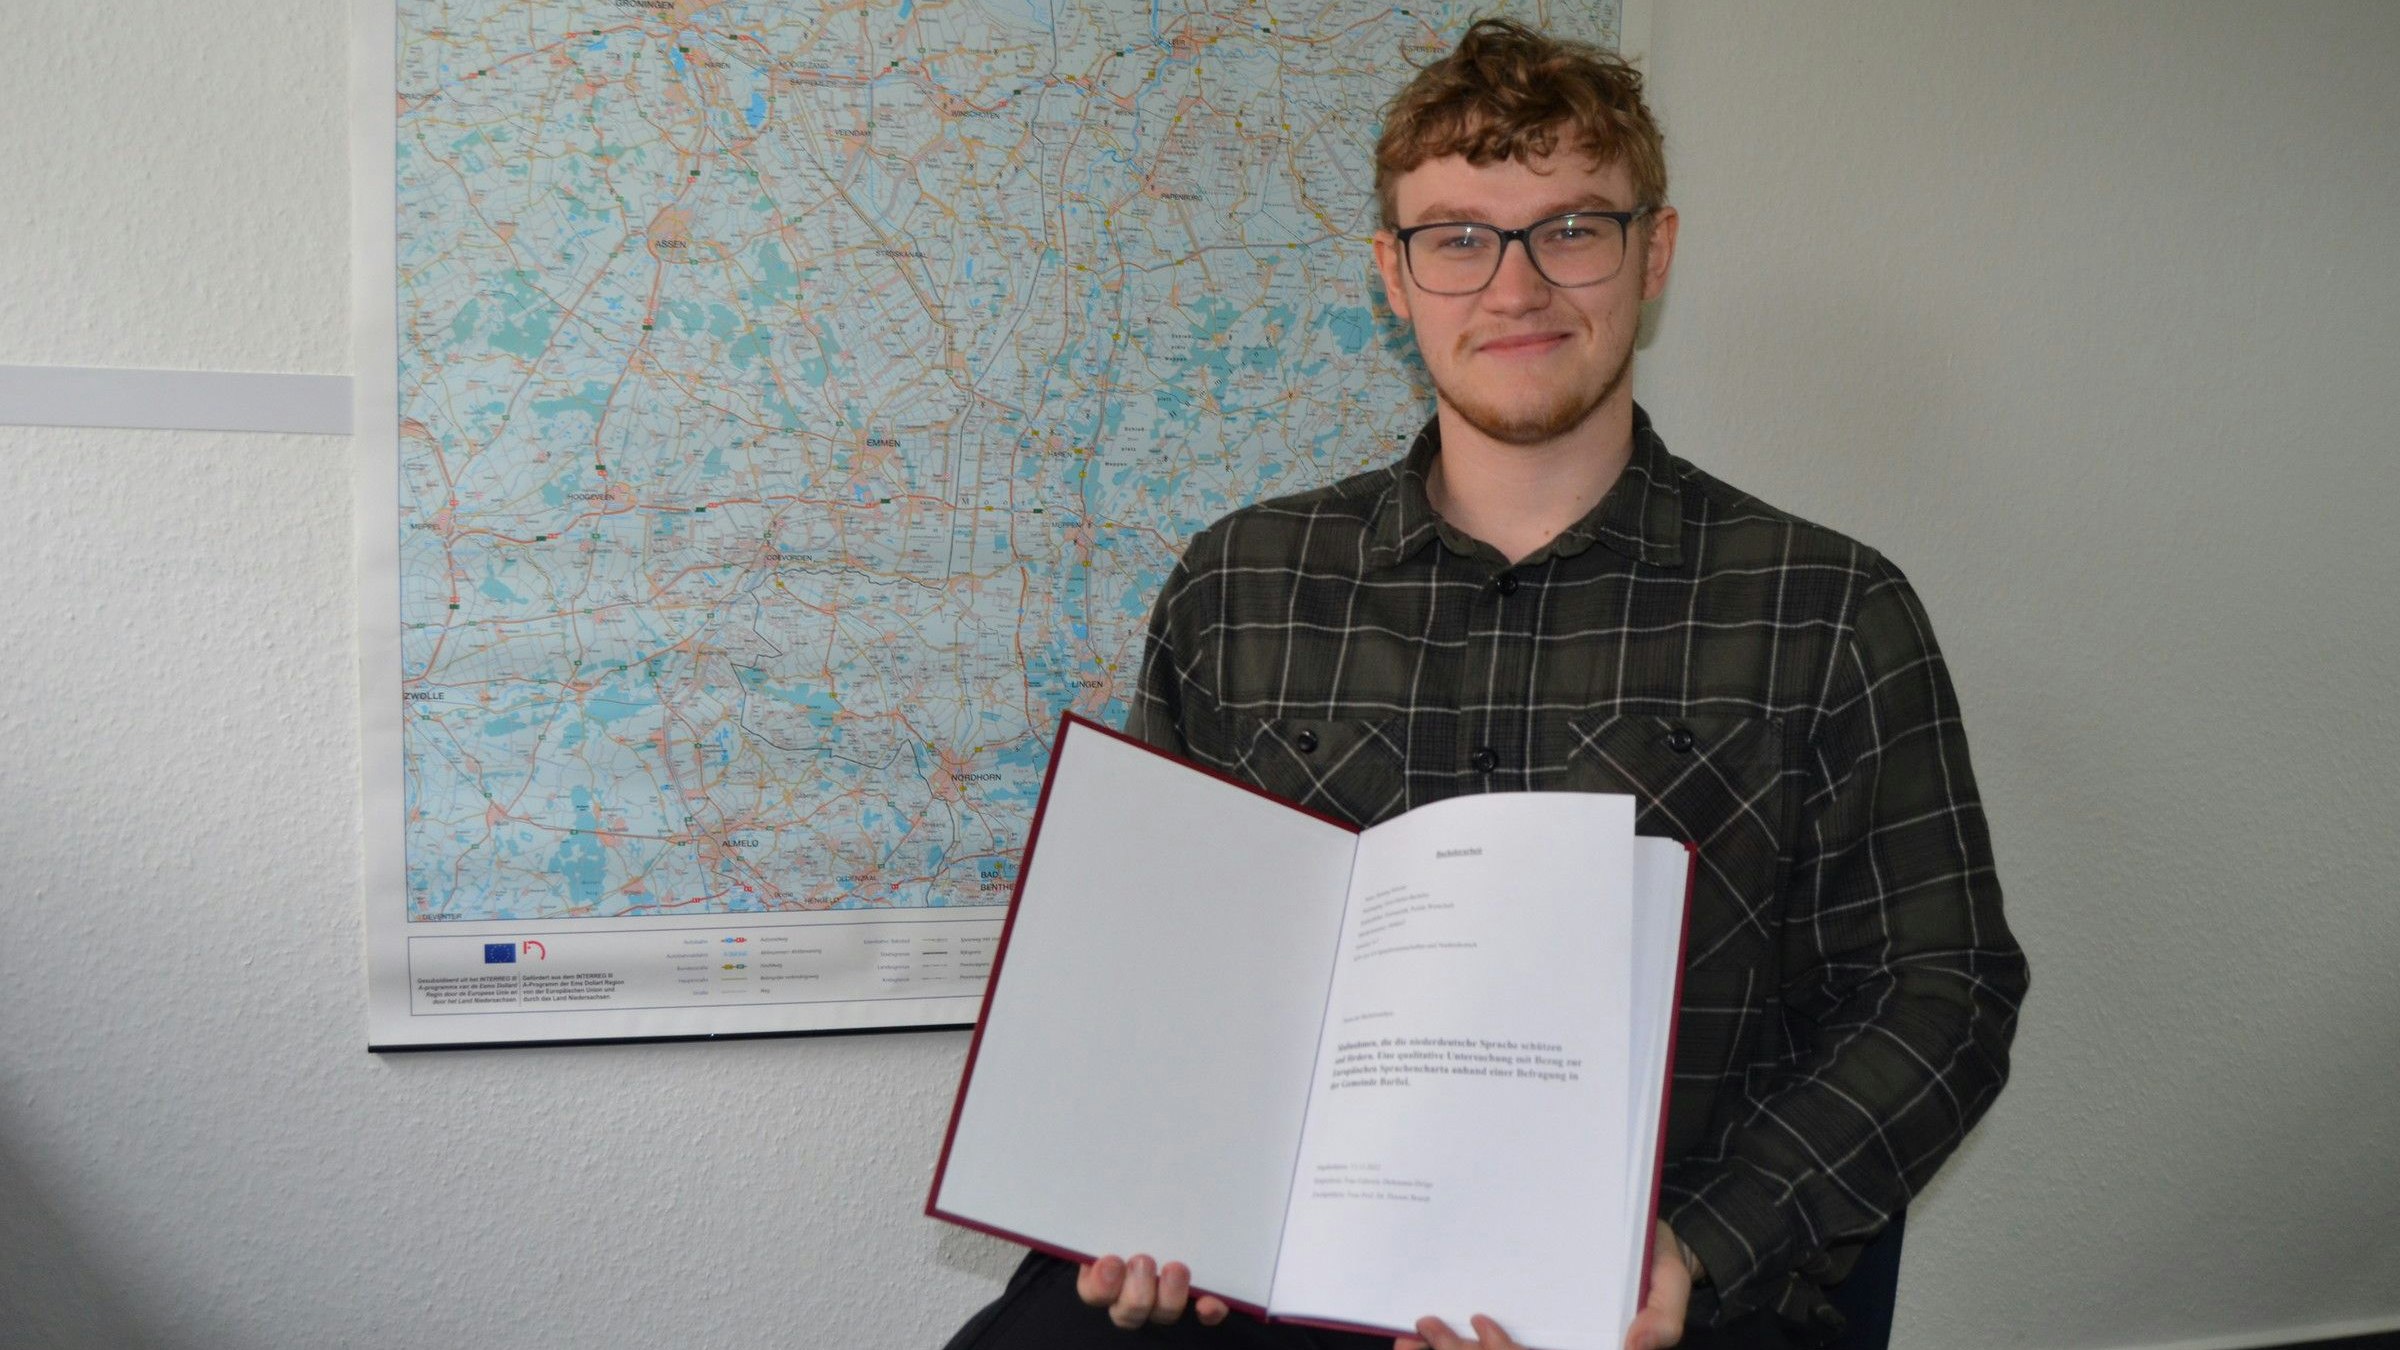 Der 23-jährige Barßeler Henning Schoone mit seiner Bachelorarbeit über das Plattdeutsche vor einer Landkarte Ostfrieslands, wo Platt immer noch sehr verbreitet ist. Foto: Fertig